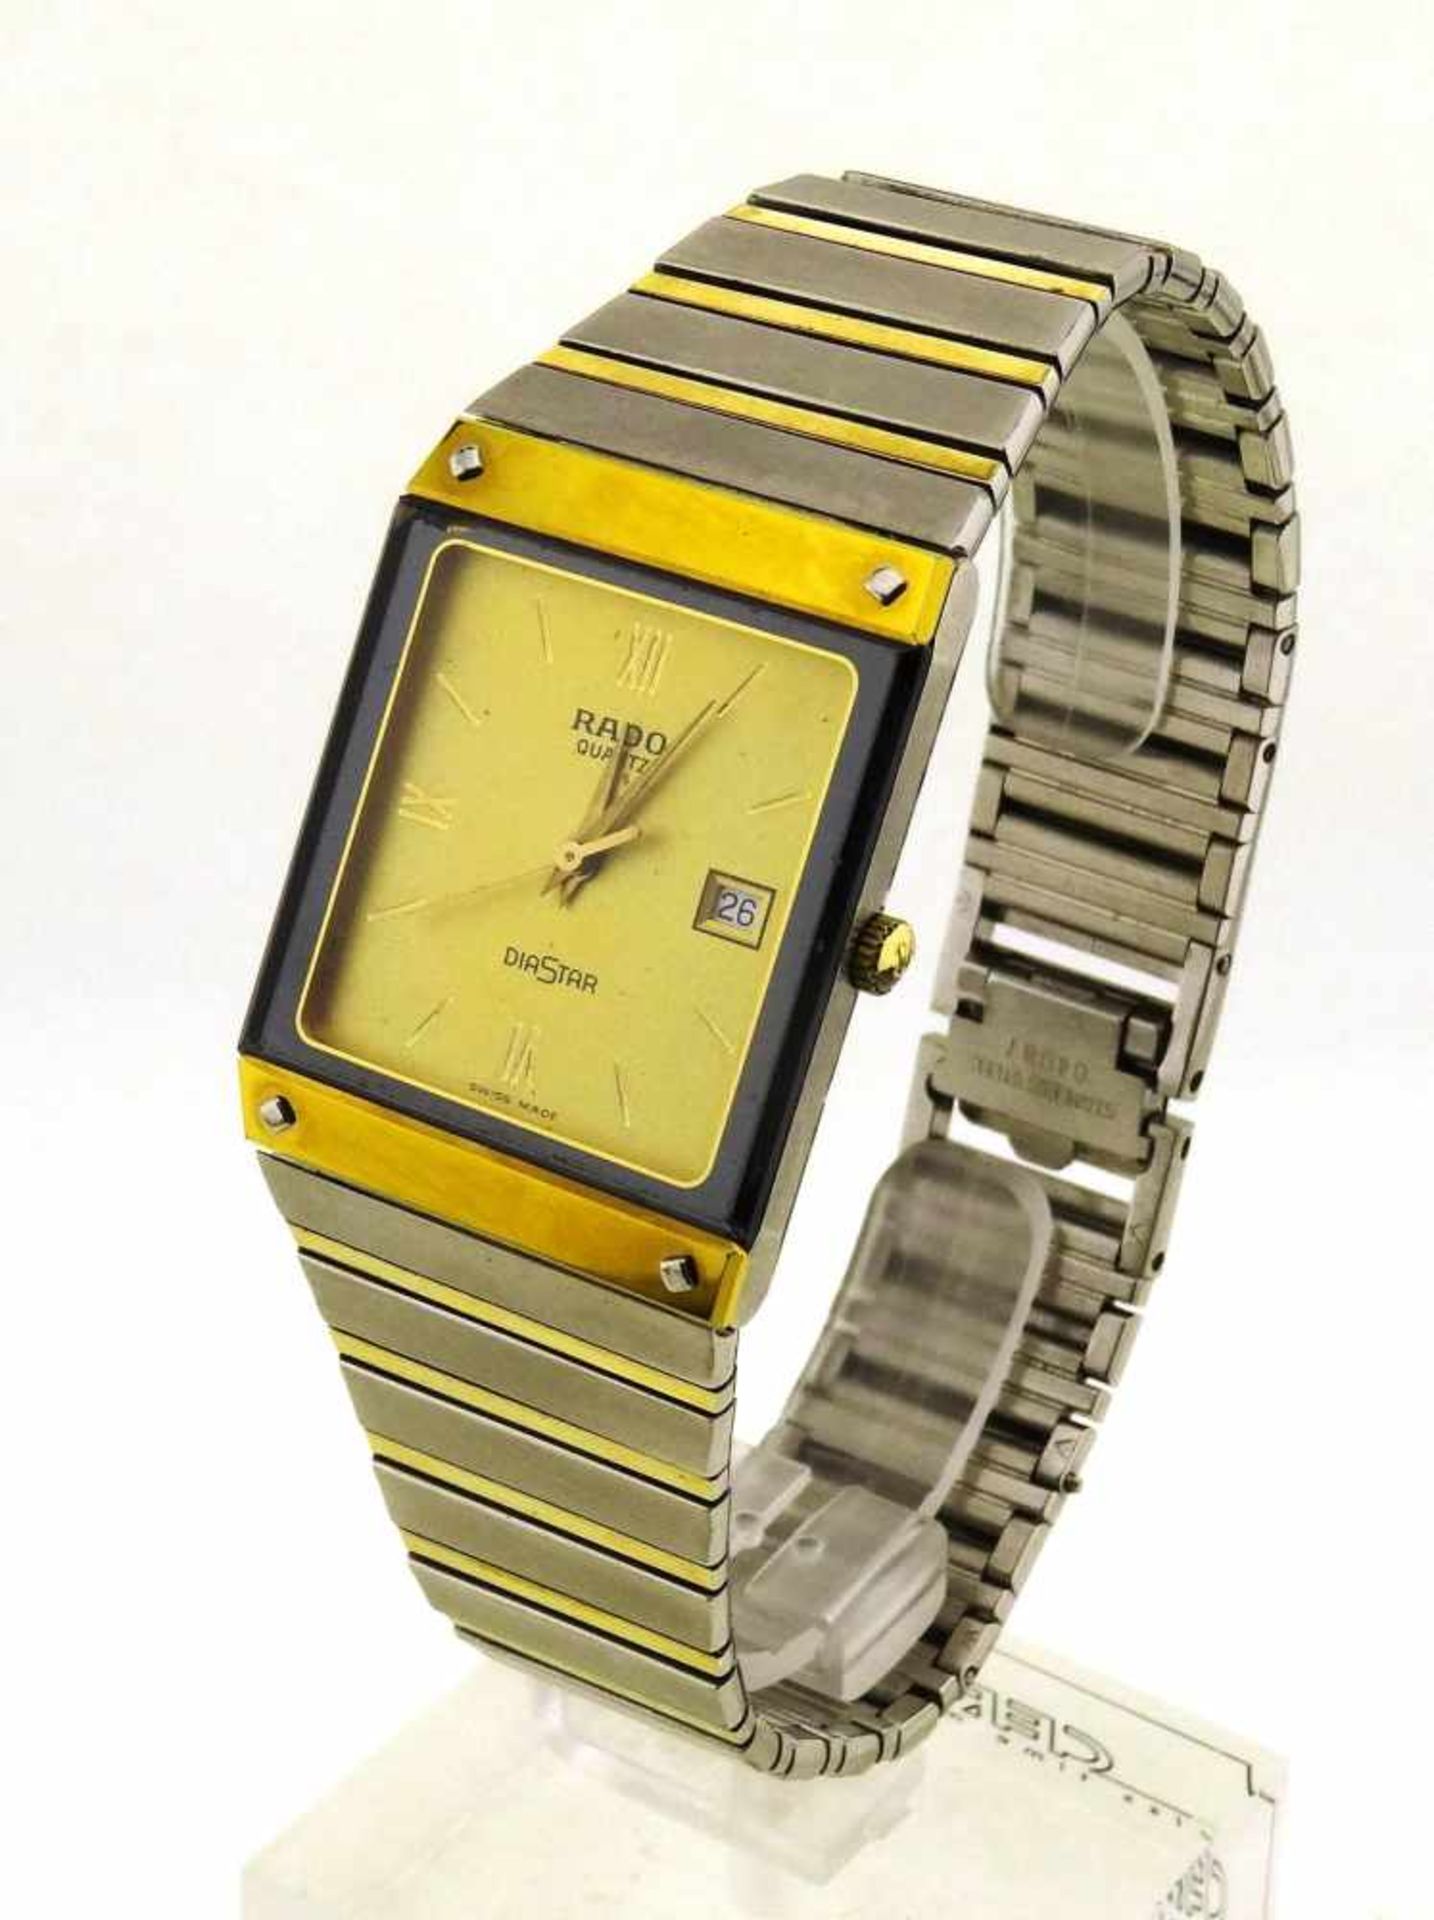 Rado Diastar Mod. 129.0195.3 Stahl / vergoldet, Uhr mit Gebrauchsspuren, läuft genau, Band Länge ca.